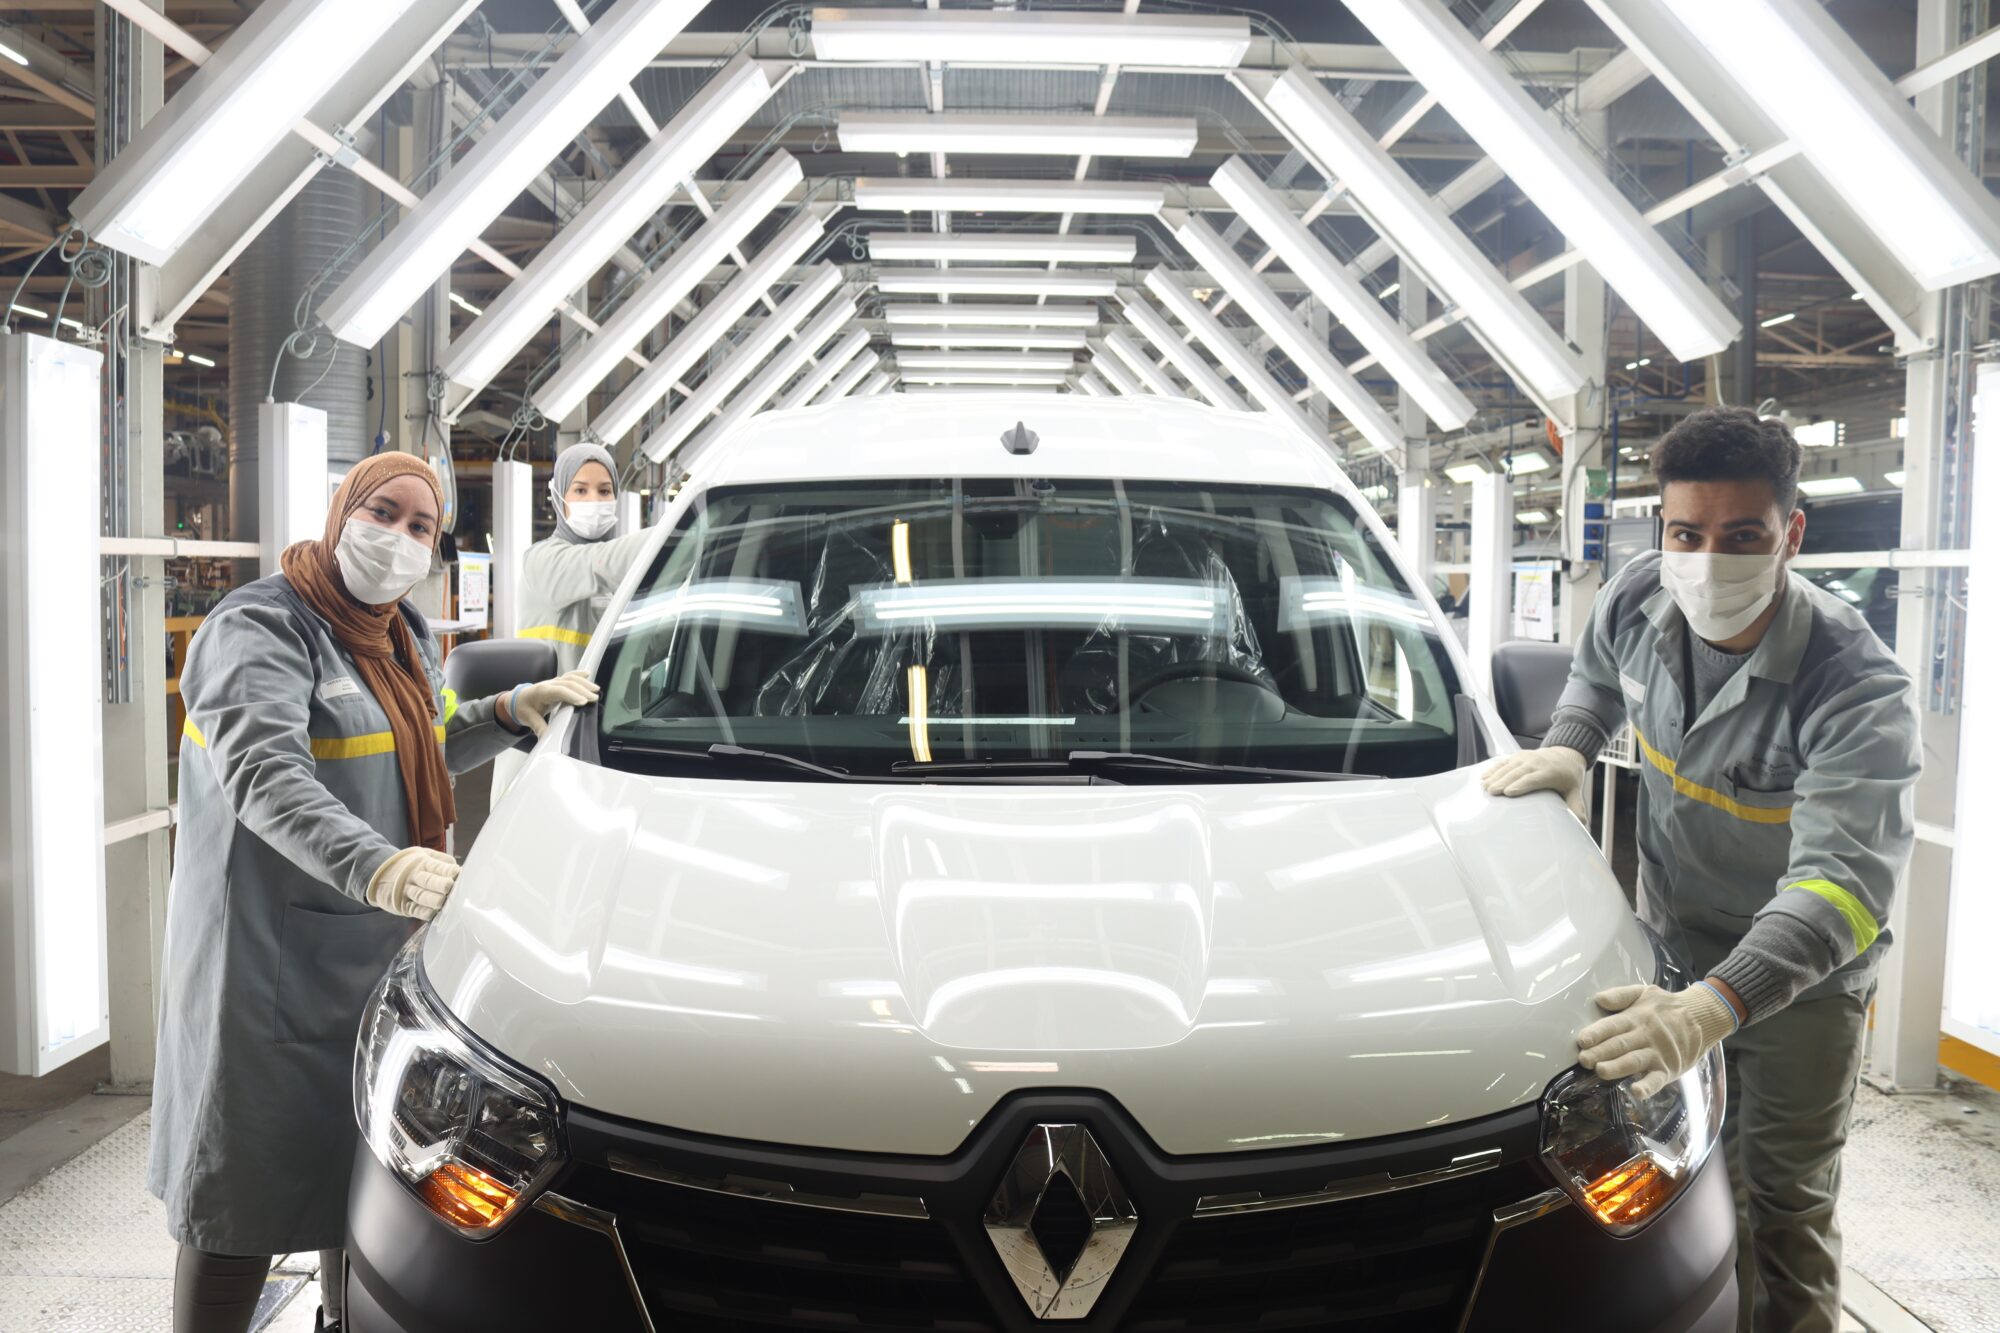 2021 - New Renault Express Van - Manufacturing